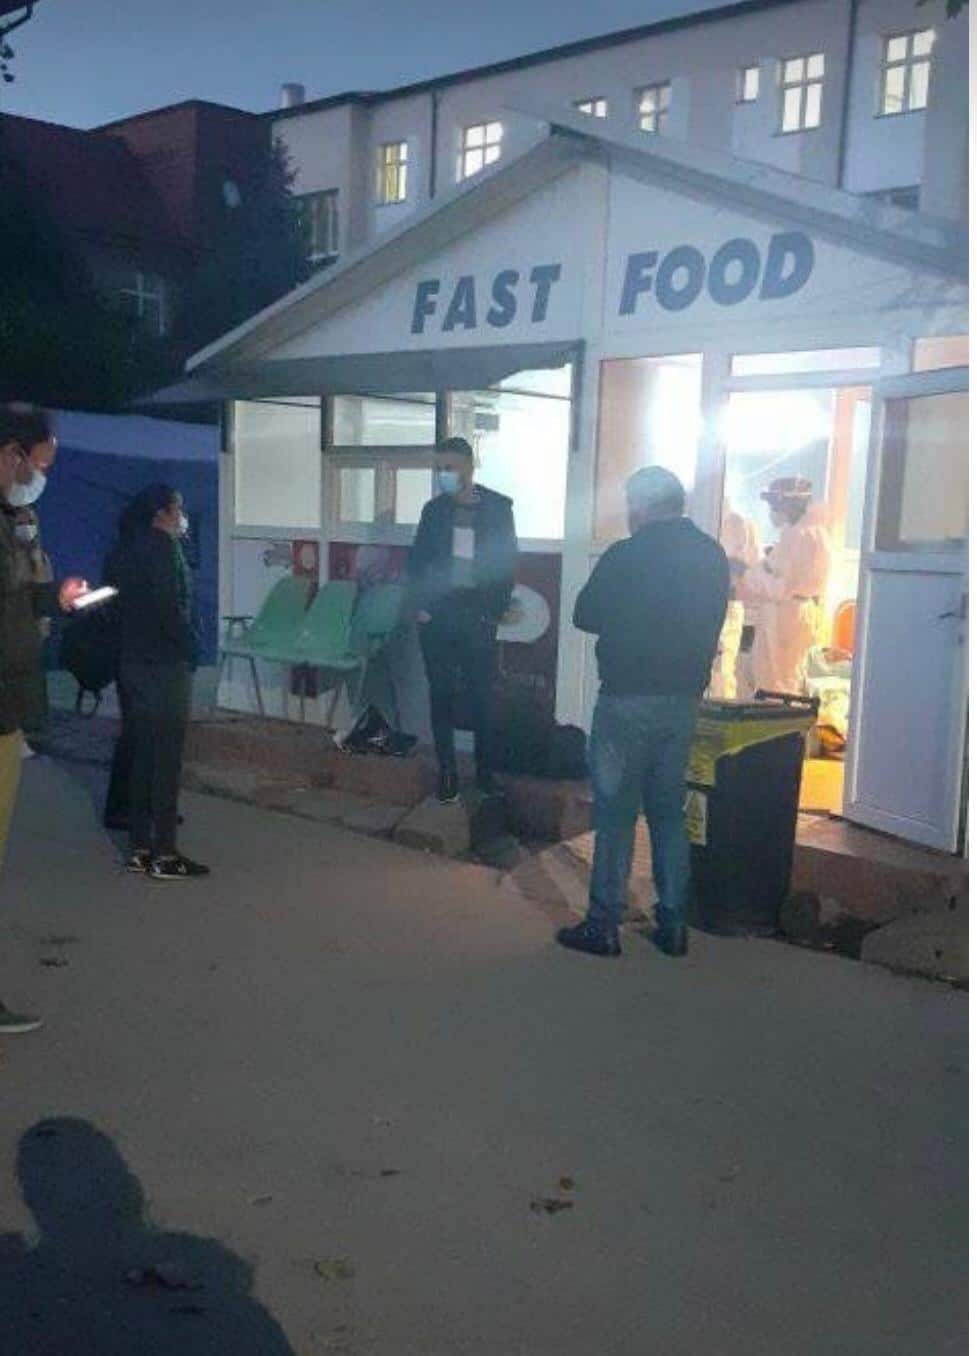 revoltător - bolnavii de covid-19 primiți într-un chioșc de fast-food la spitalul județean sibiu